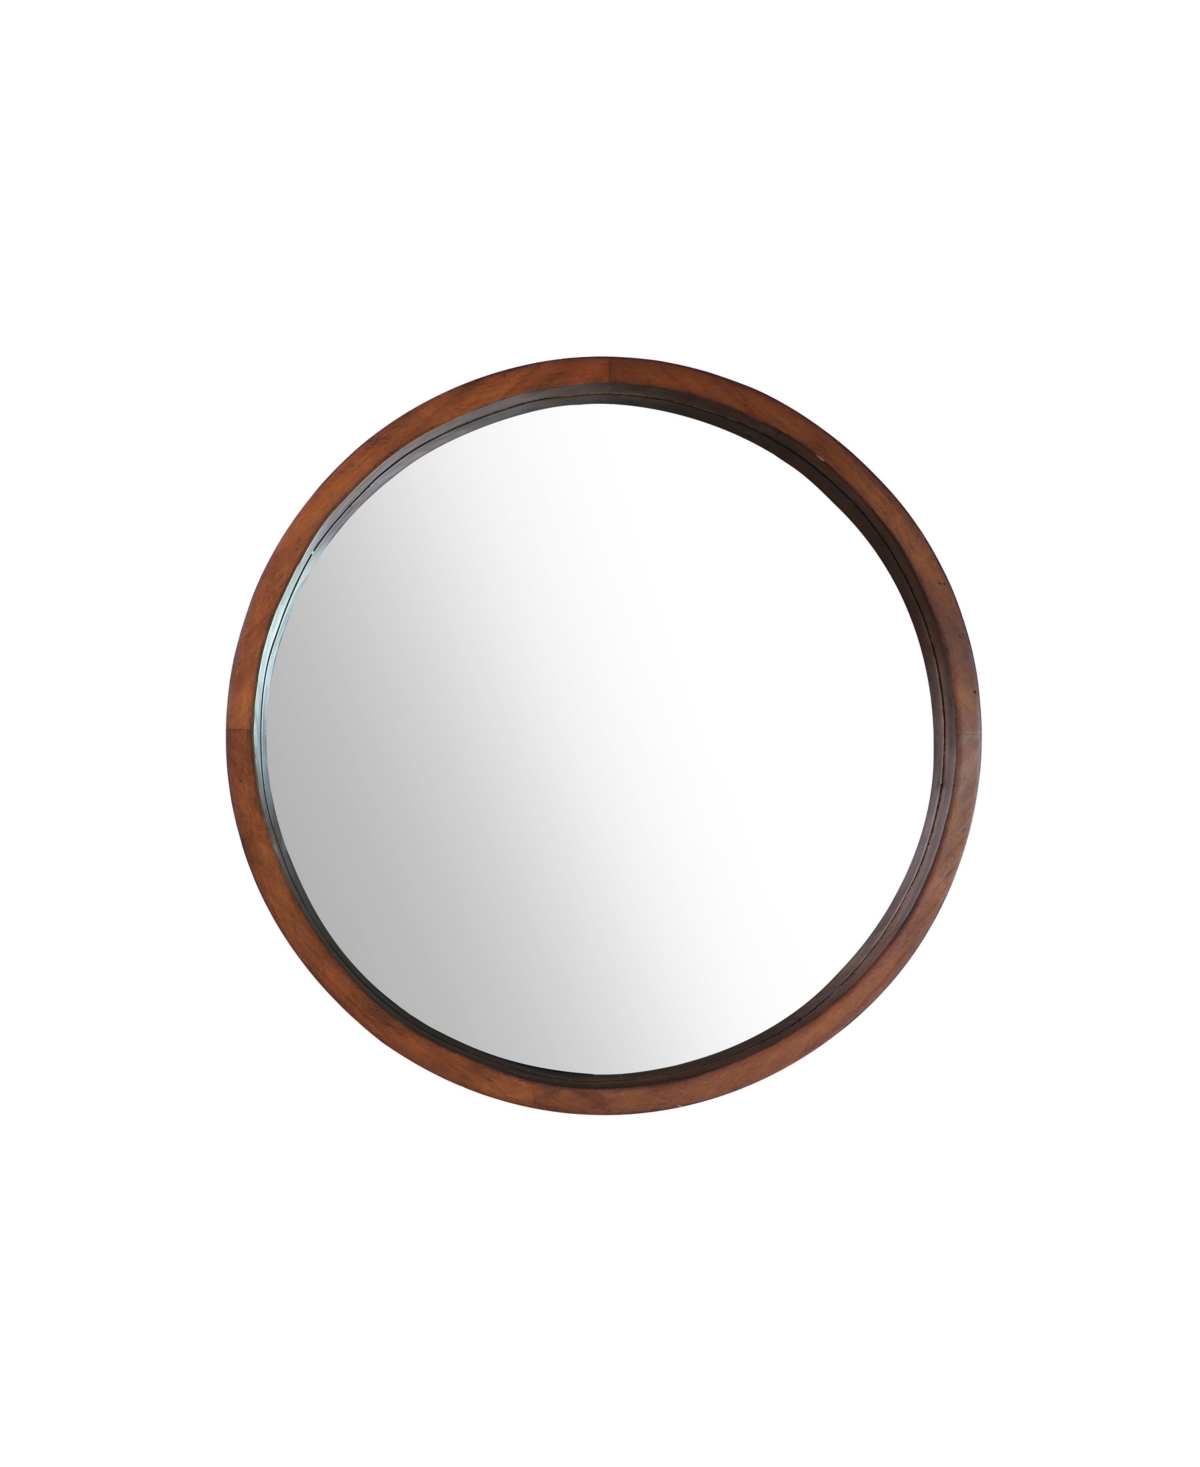 Round Wood Frame Bathroom Vanity Wall Mirror, 22" D - Dark Brown